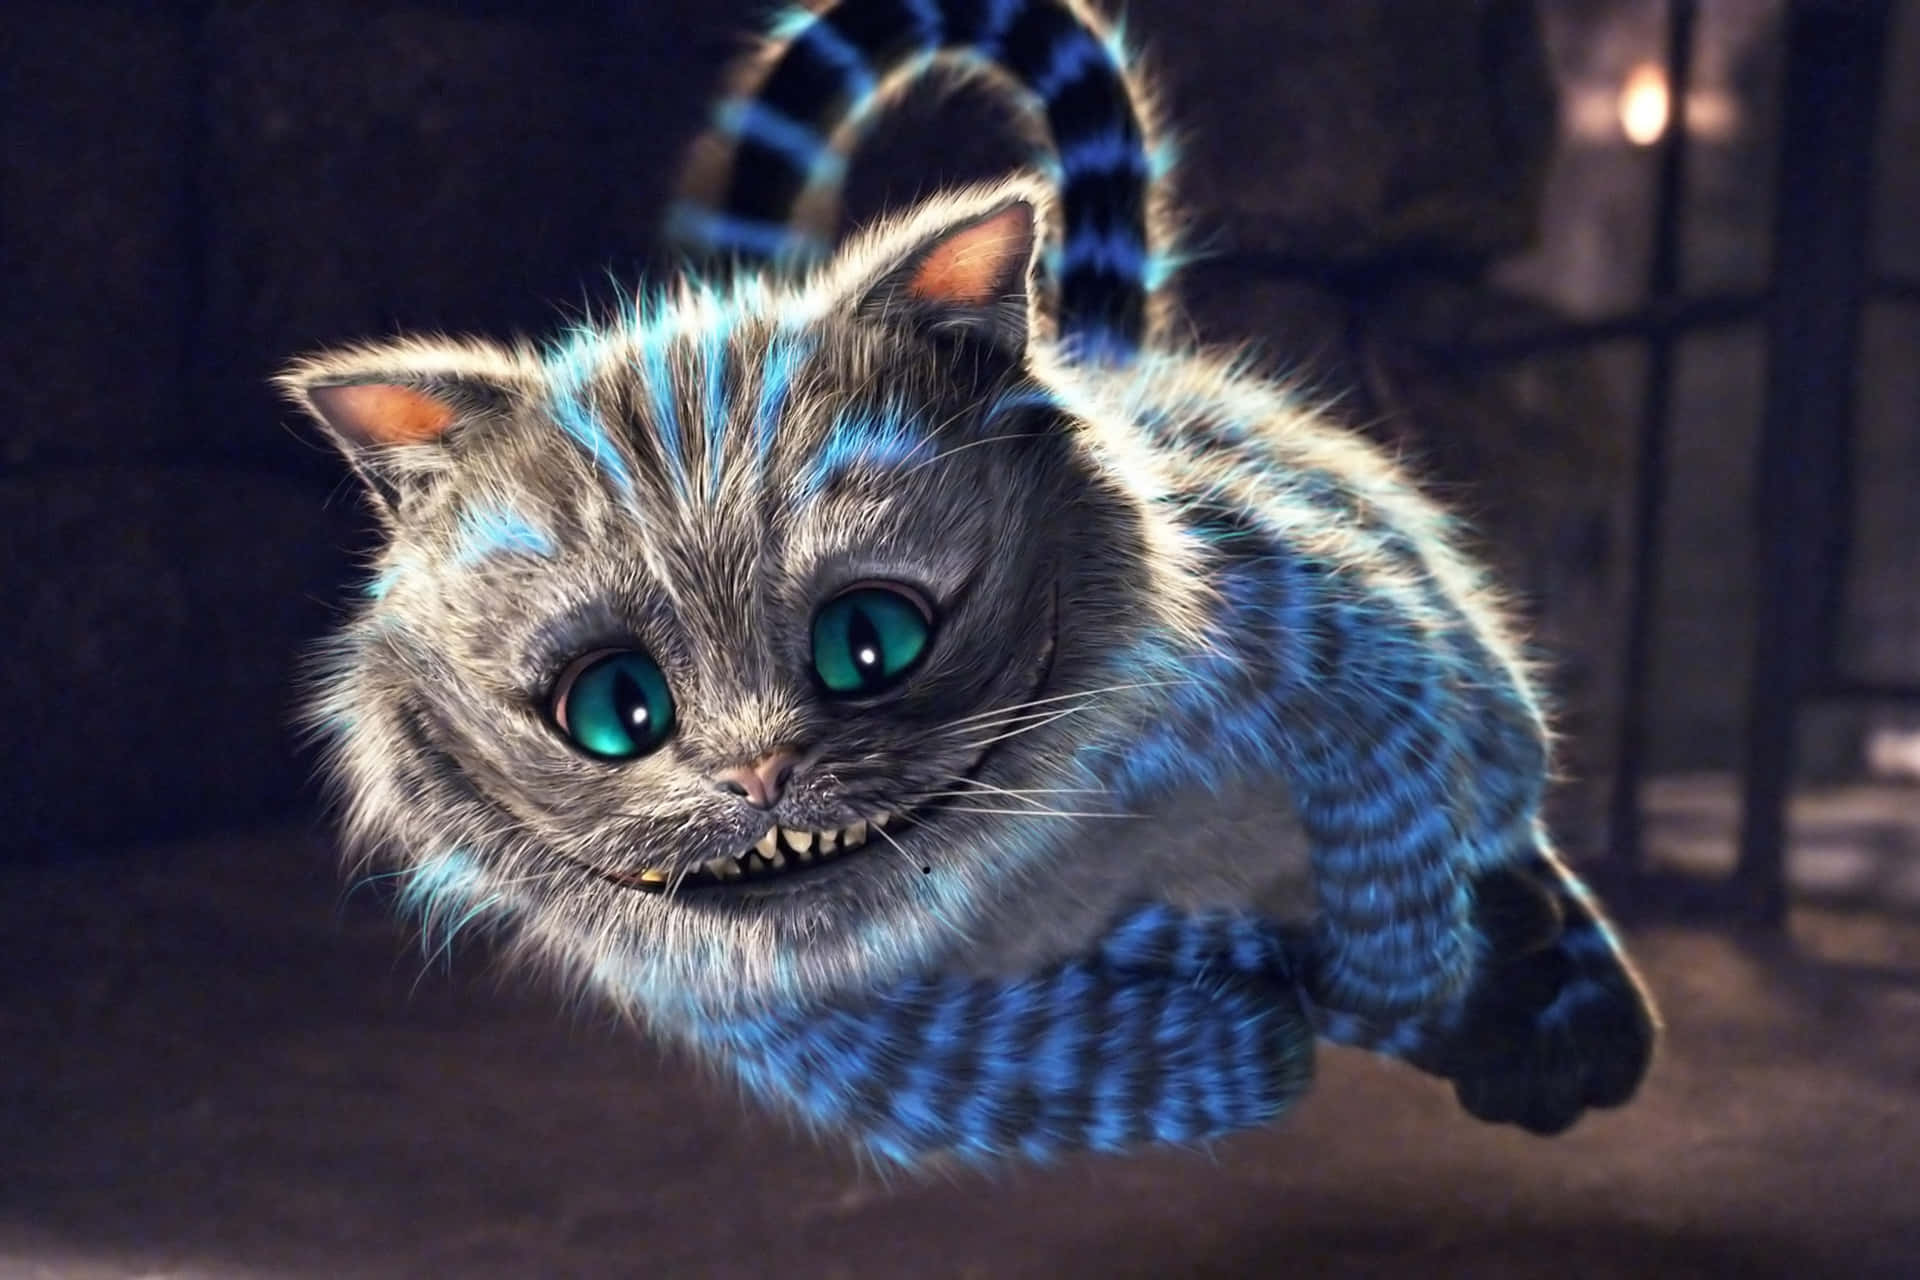 Immagineil Magico Gatto Del Cheshire Che Guarda Intensamente L'attonita Alice.